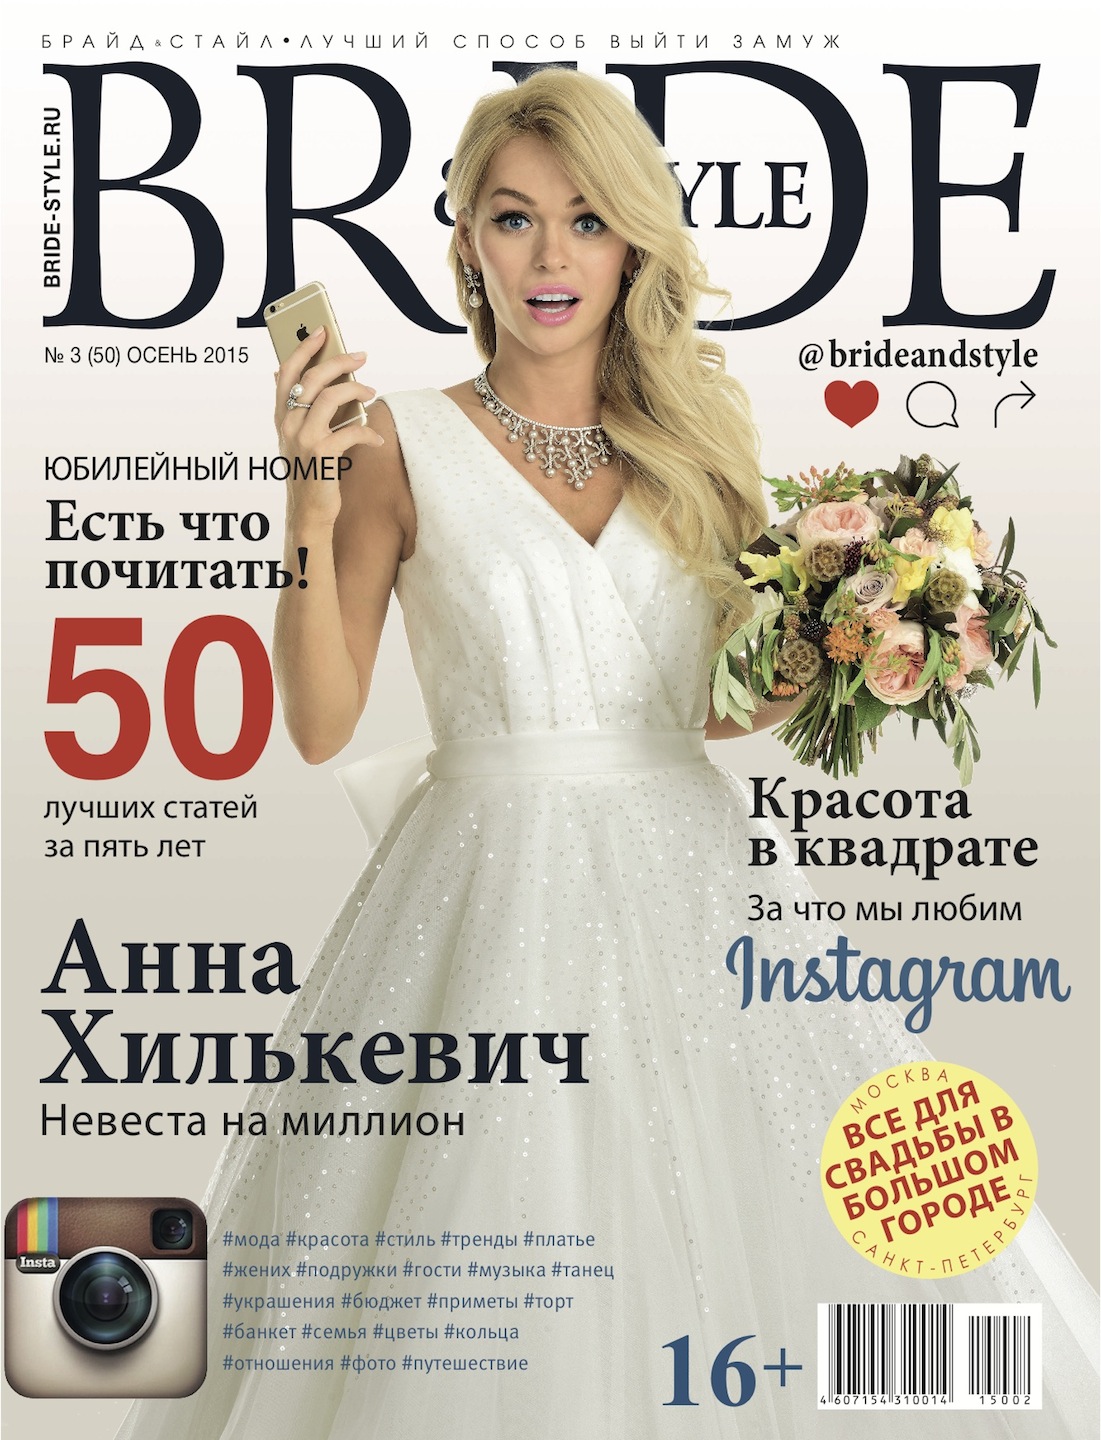 Свадебный журнал BRIDE. Осень 2015